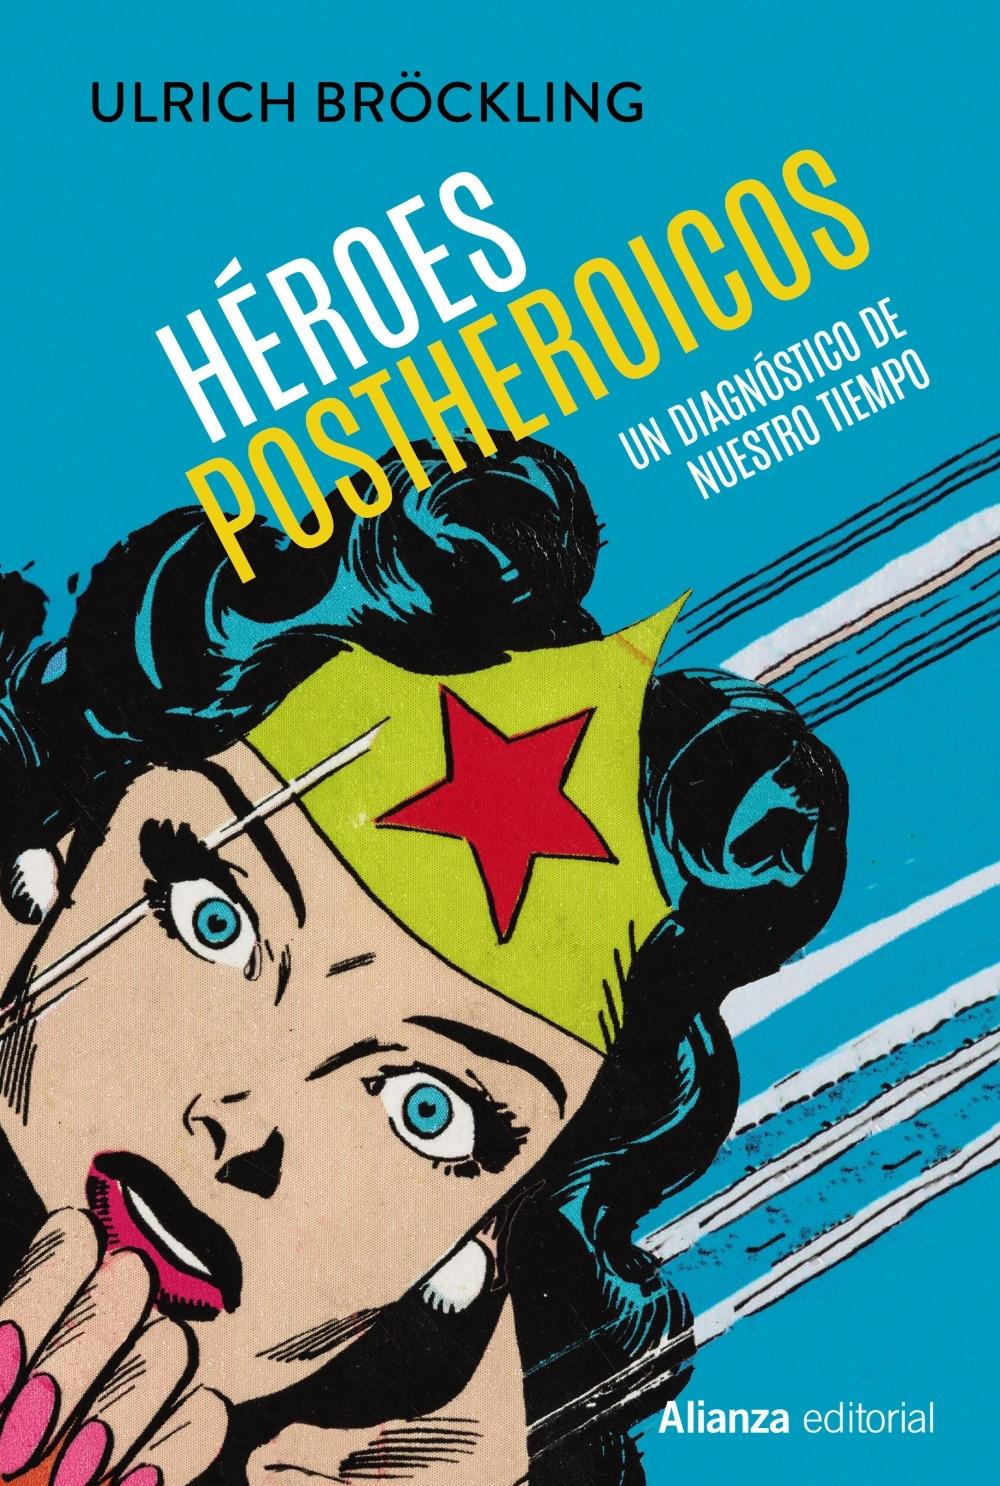 Héroes postheroicos "Un diagnóstico de nuestro tiempo"